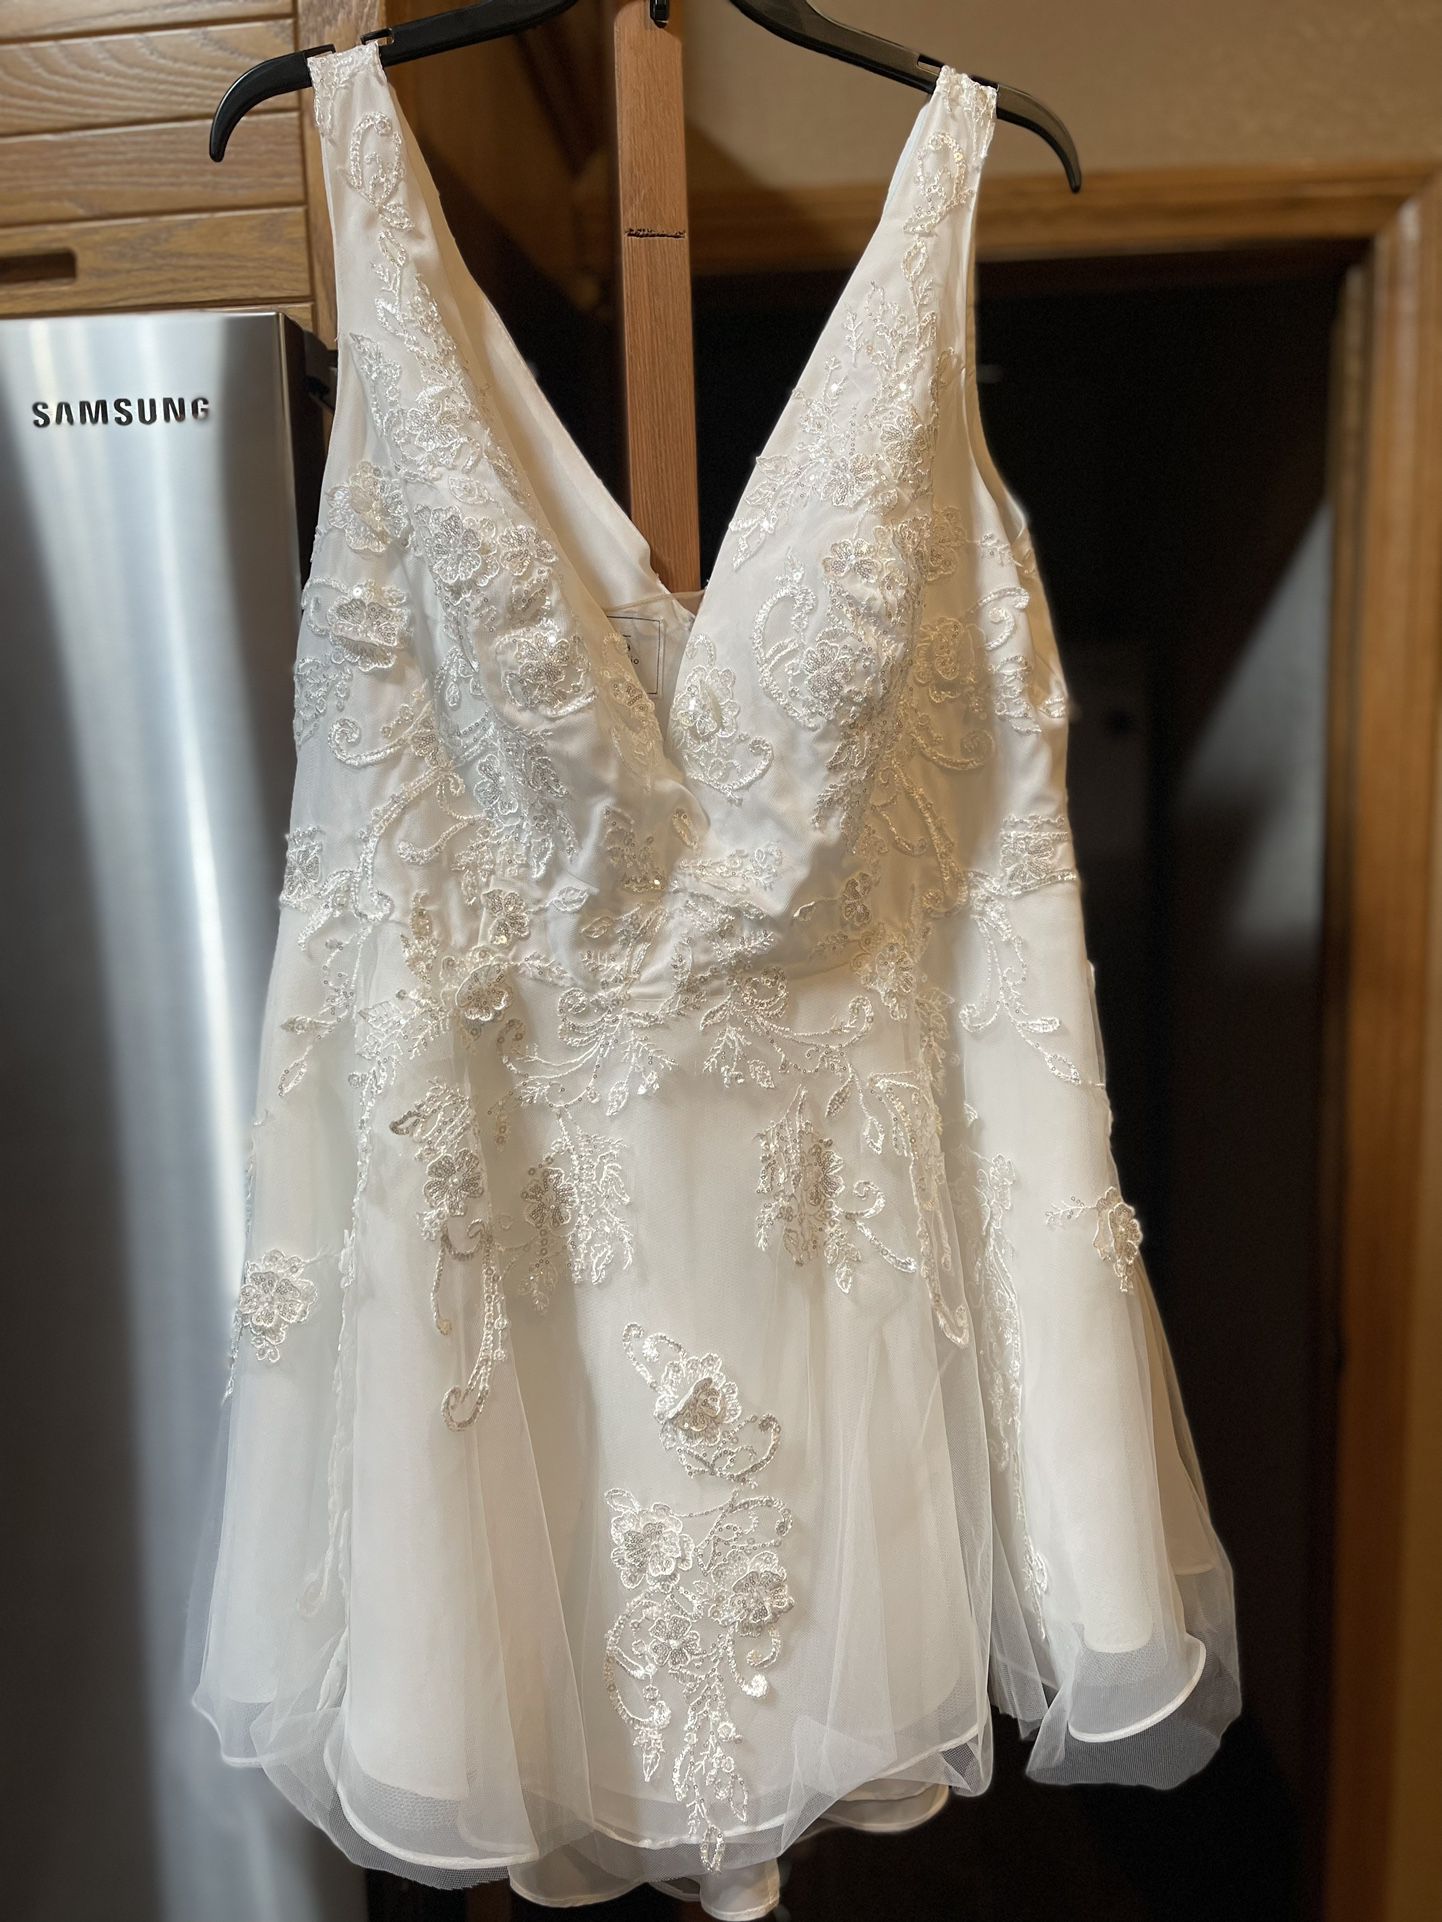 David’s Bridal Short Wedding Dress